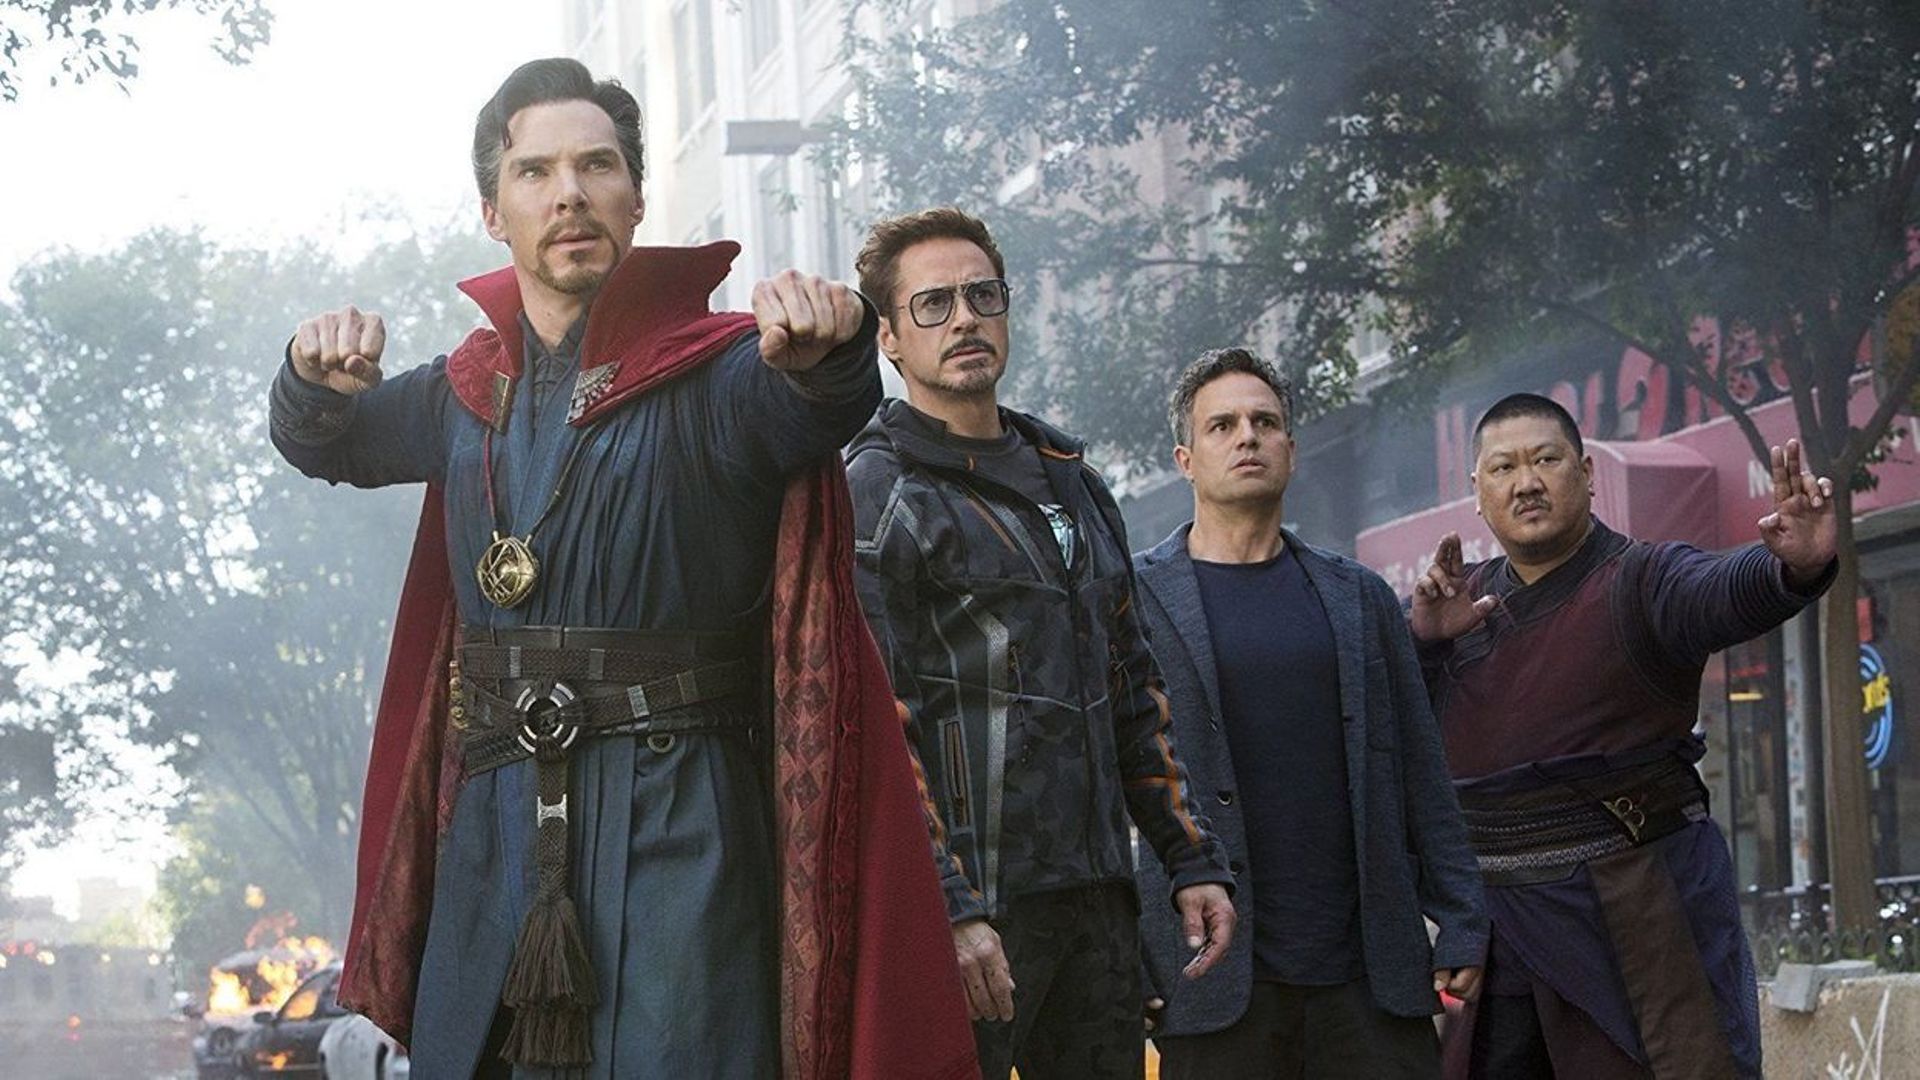 "Plus gros succès de l'année au box-office mondial", Avengers: Infinity Wars" est en course pour l'Oscar des meilleurs effets spéciaux